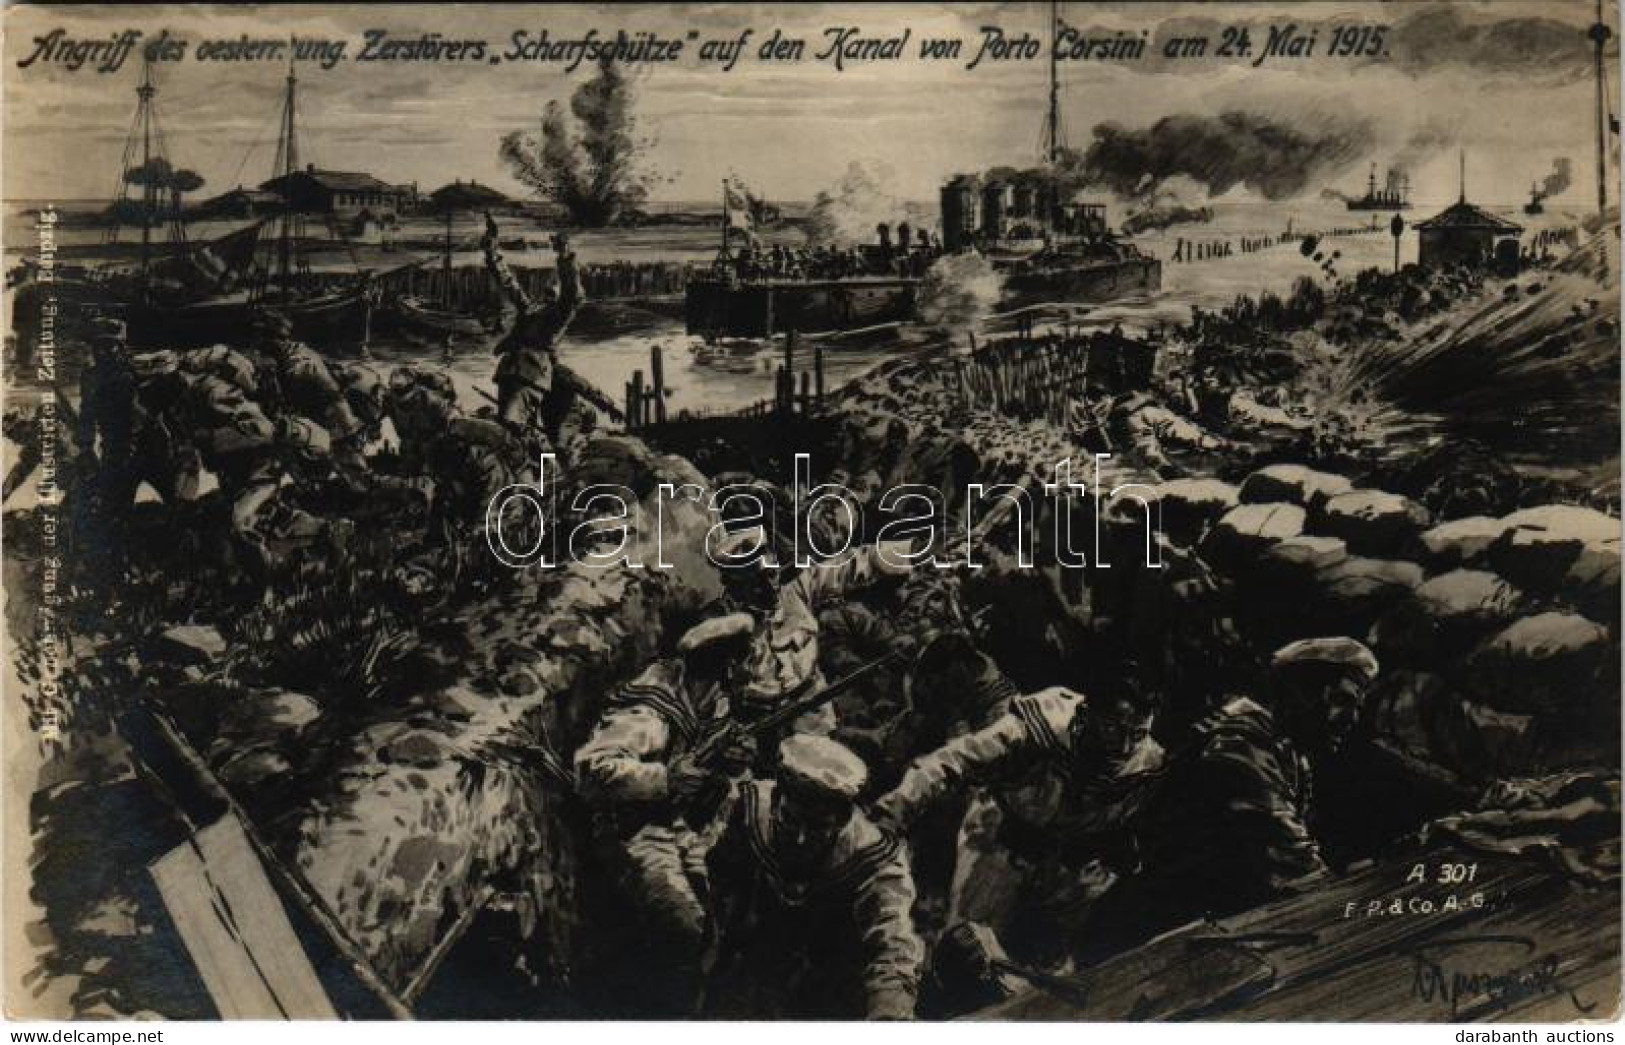 T2/T3 1915 Angriff Des Oesterr.-ung. Zerstörers "Scharfschütze" Auf Den Kanal Von Porto Corsini Am 24. Mai 1915. / SMS S - Sin Clasificación